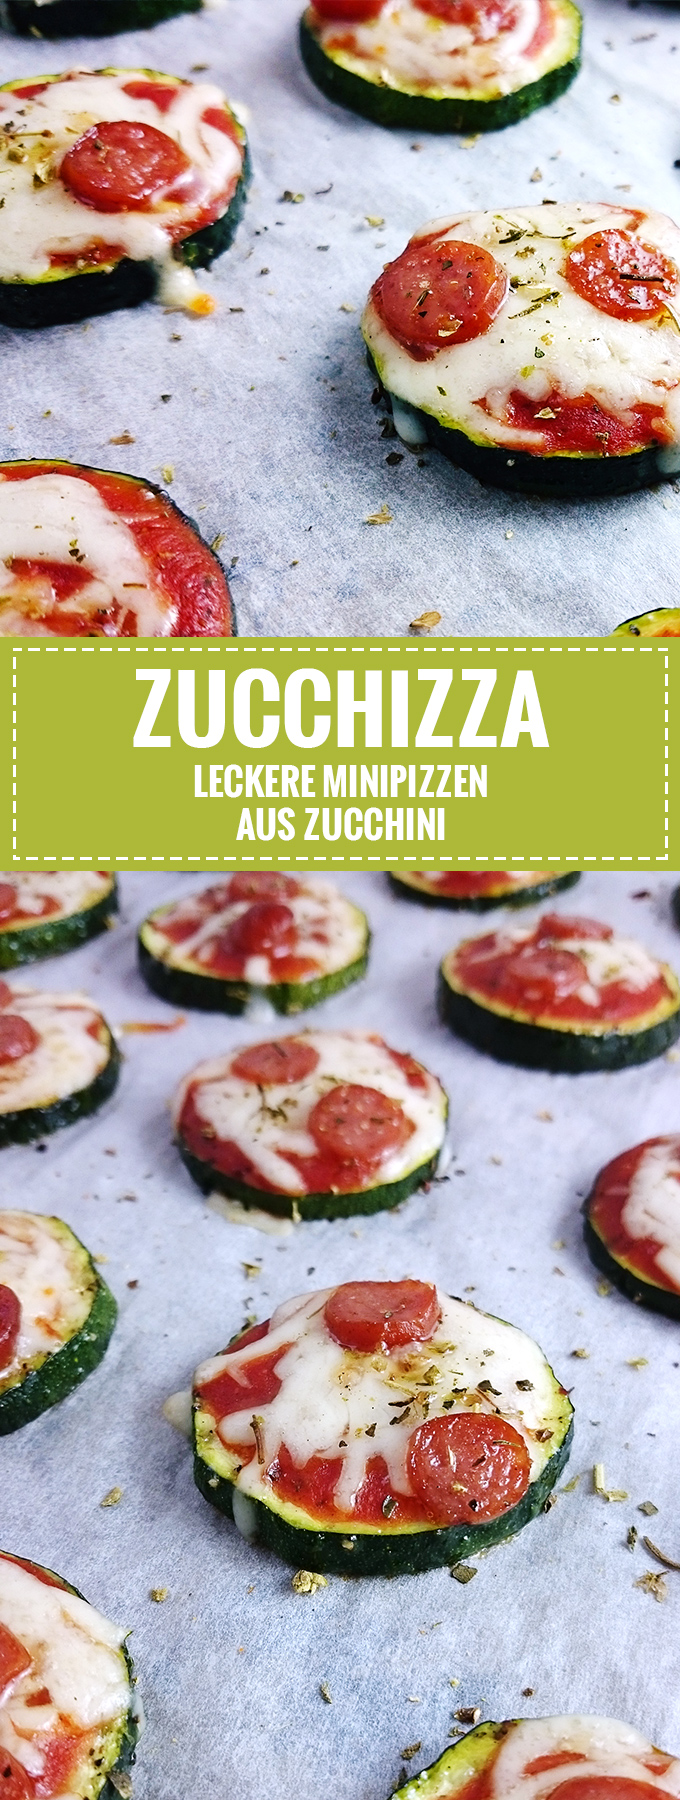 Zucchini Mini-Pizzen "Zucchizzas" // Leckerer und einfacher Partysnack // Knabberkult.de